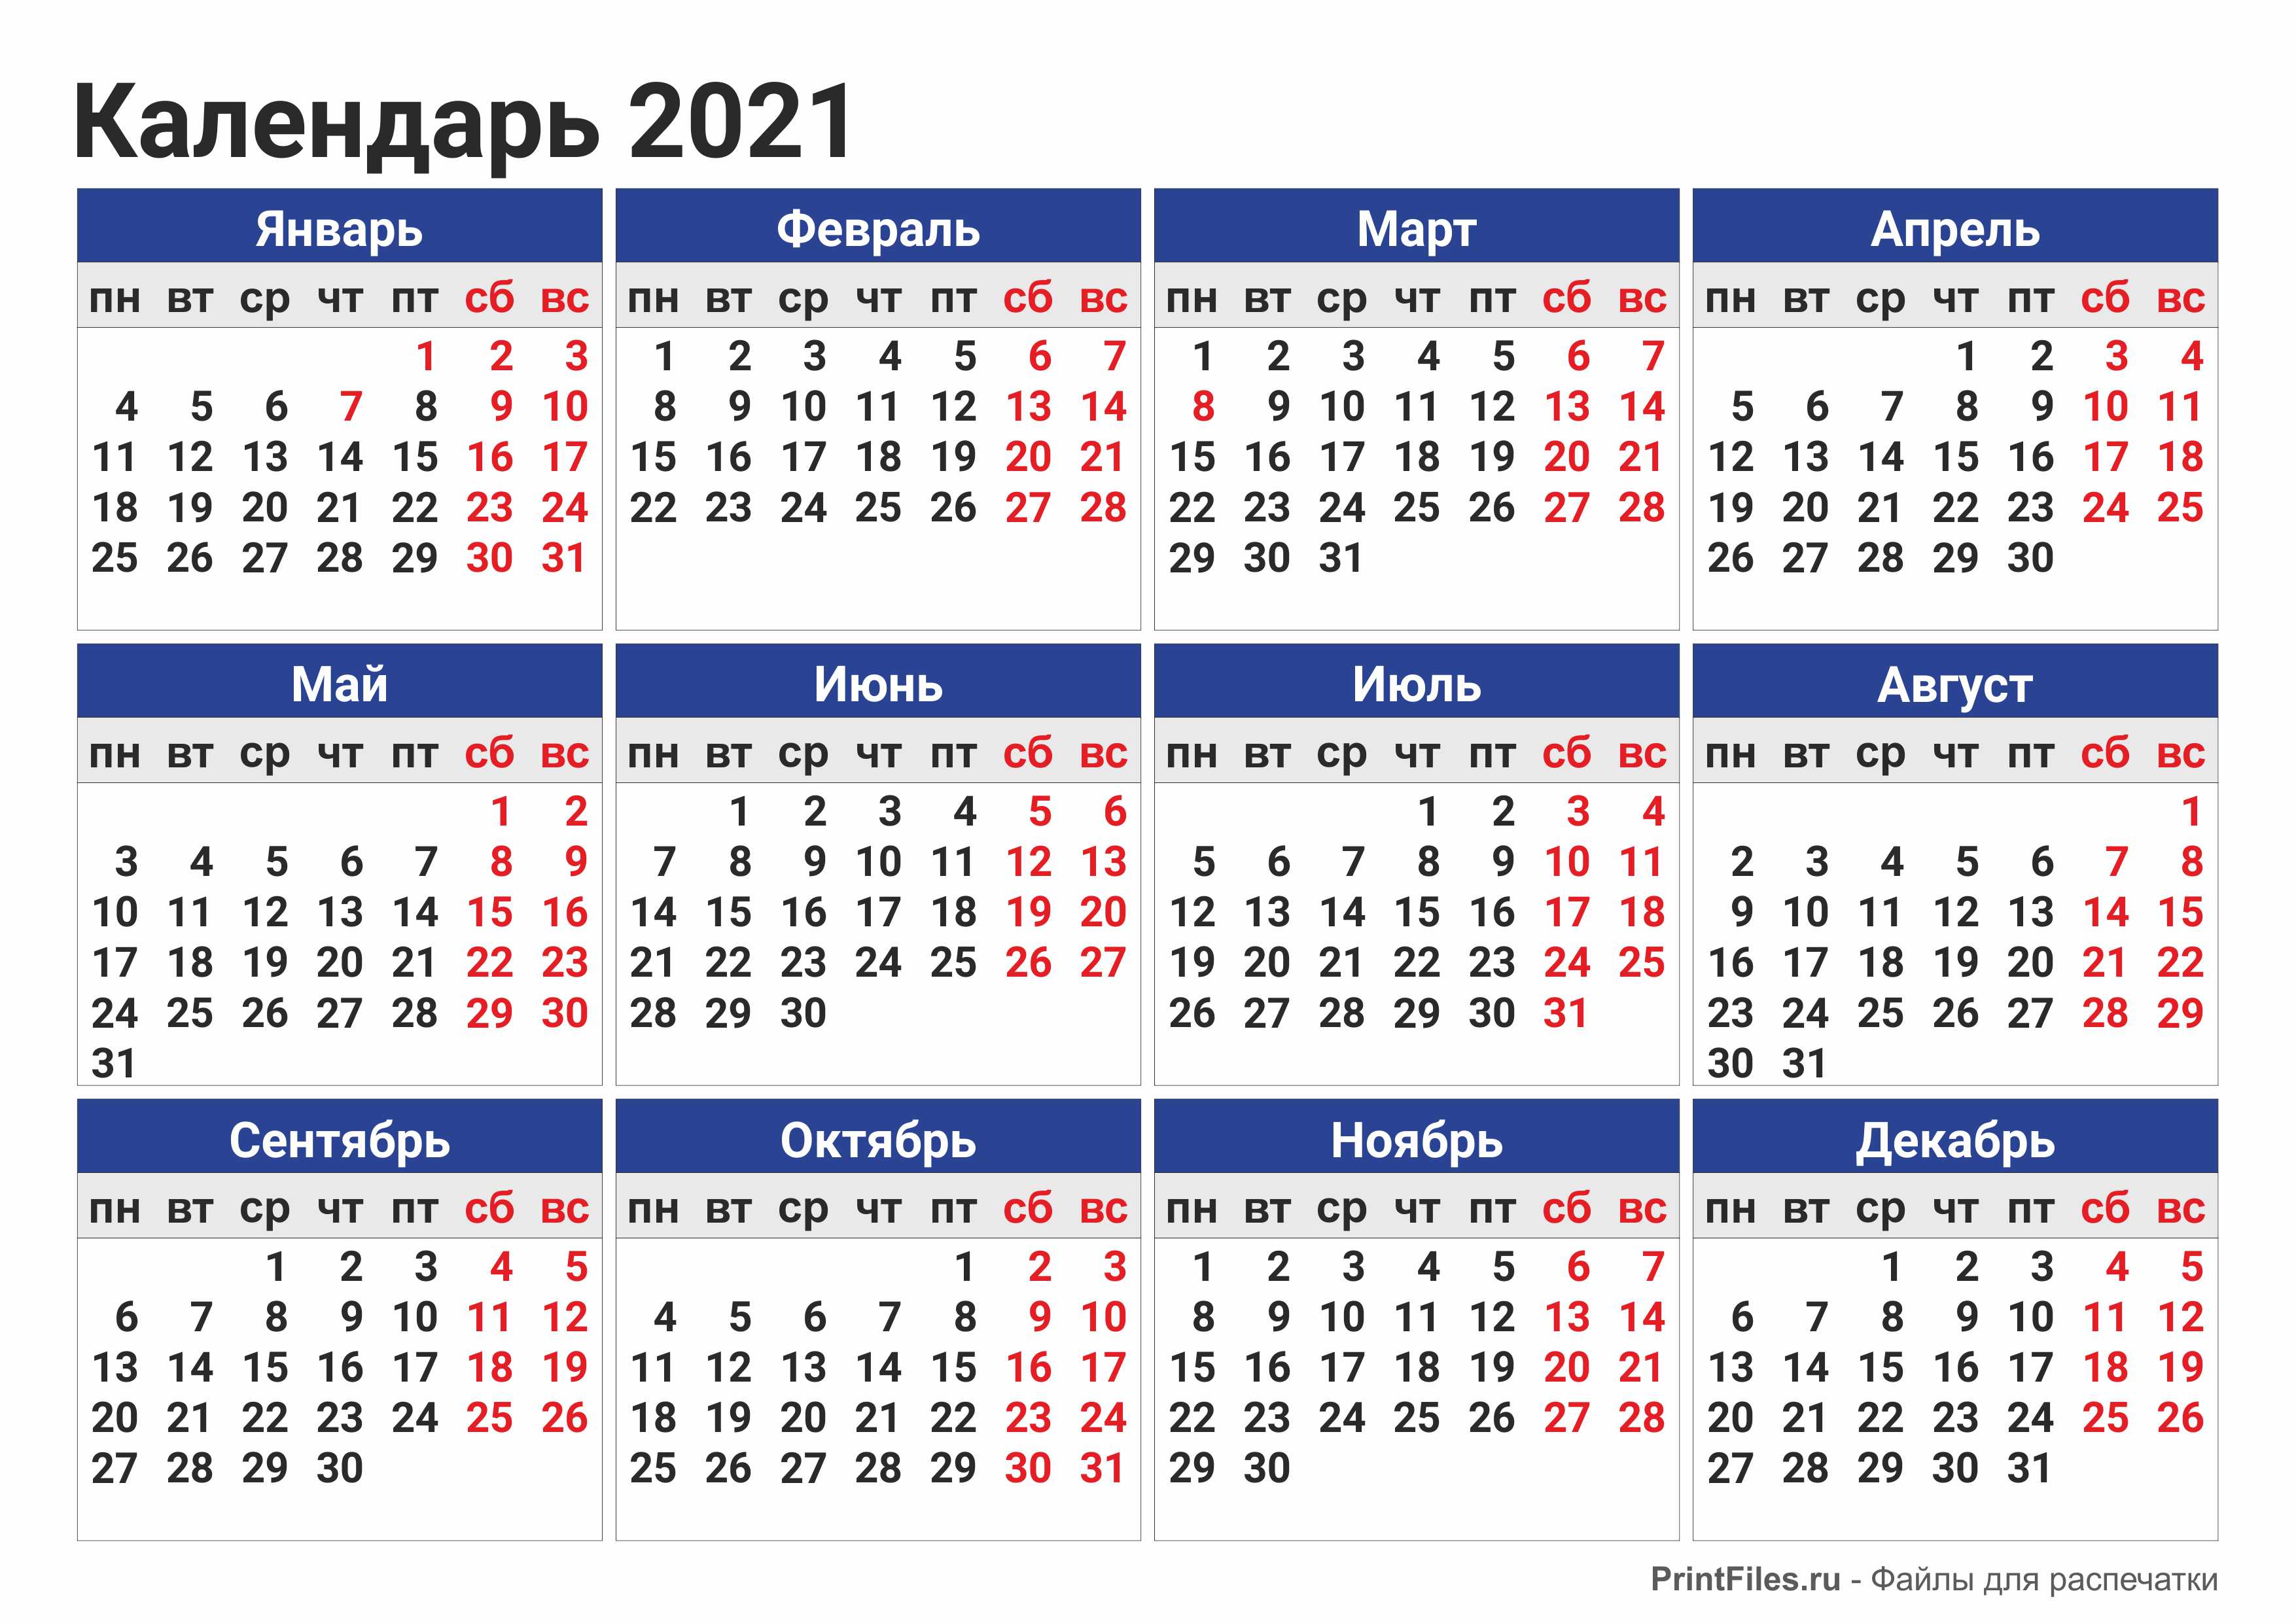 Скачать календарь 2021 для печати на А4 - Файлы для распечатки